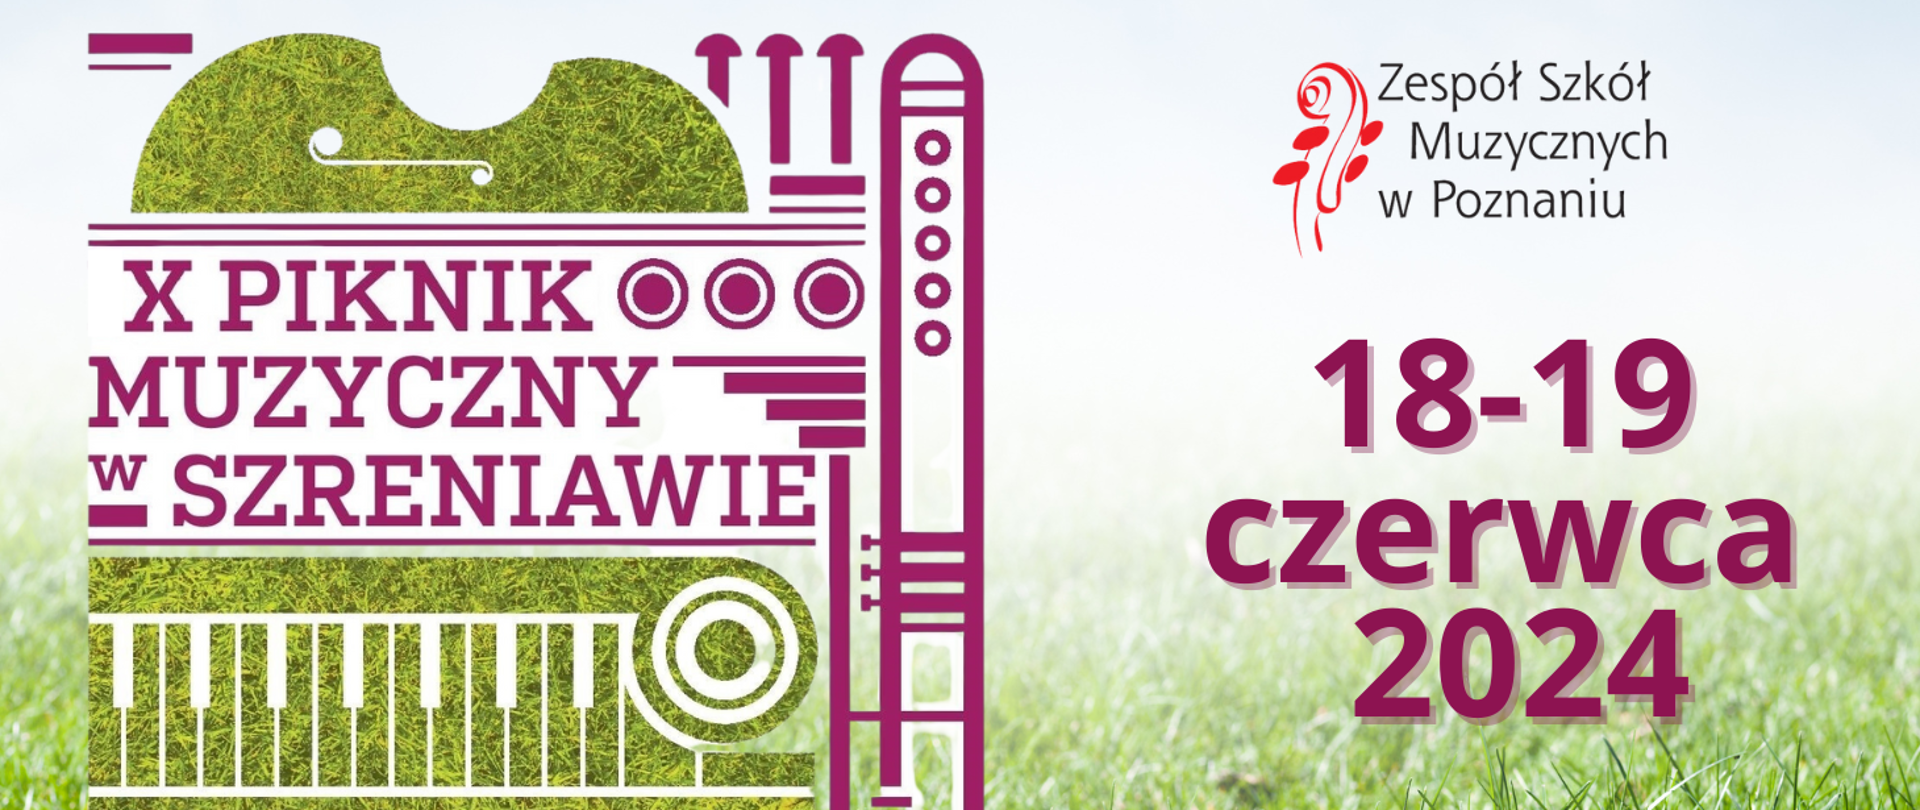 Grafika na tle zielonej trawie z logo Zespołu Szkół Muzycznych w Poznaniu z tekstem: X Piknik Muzyczny w Szreniawie 18-19 czerwca 2024